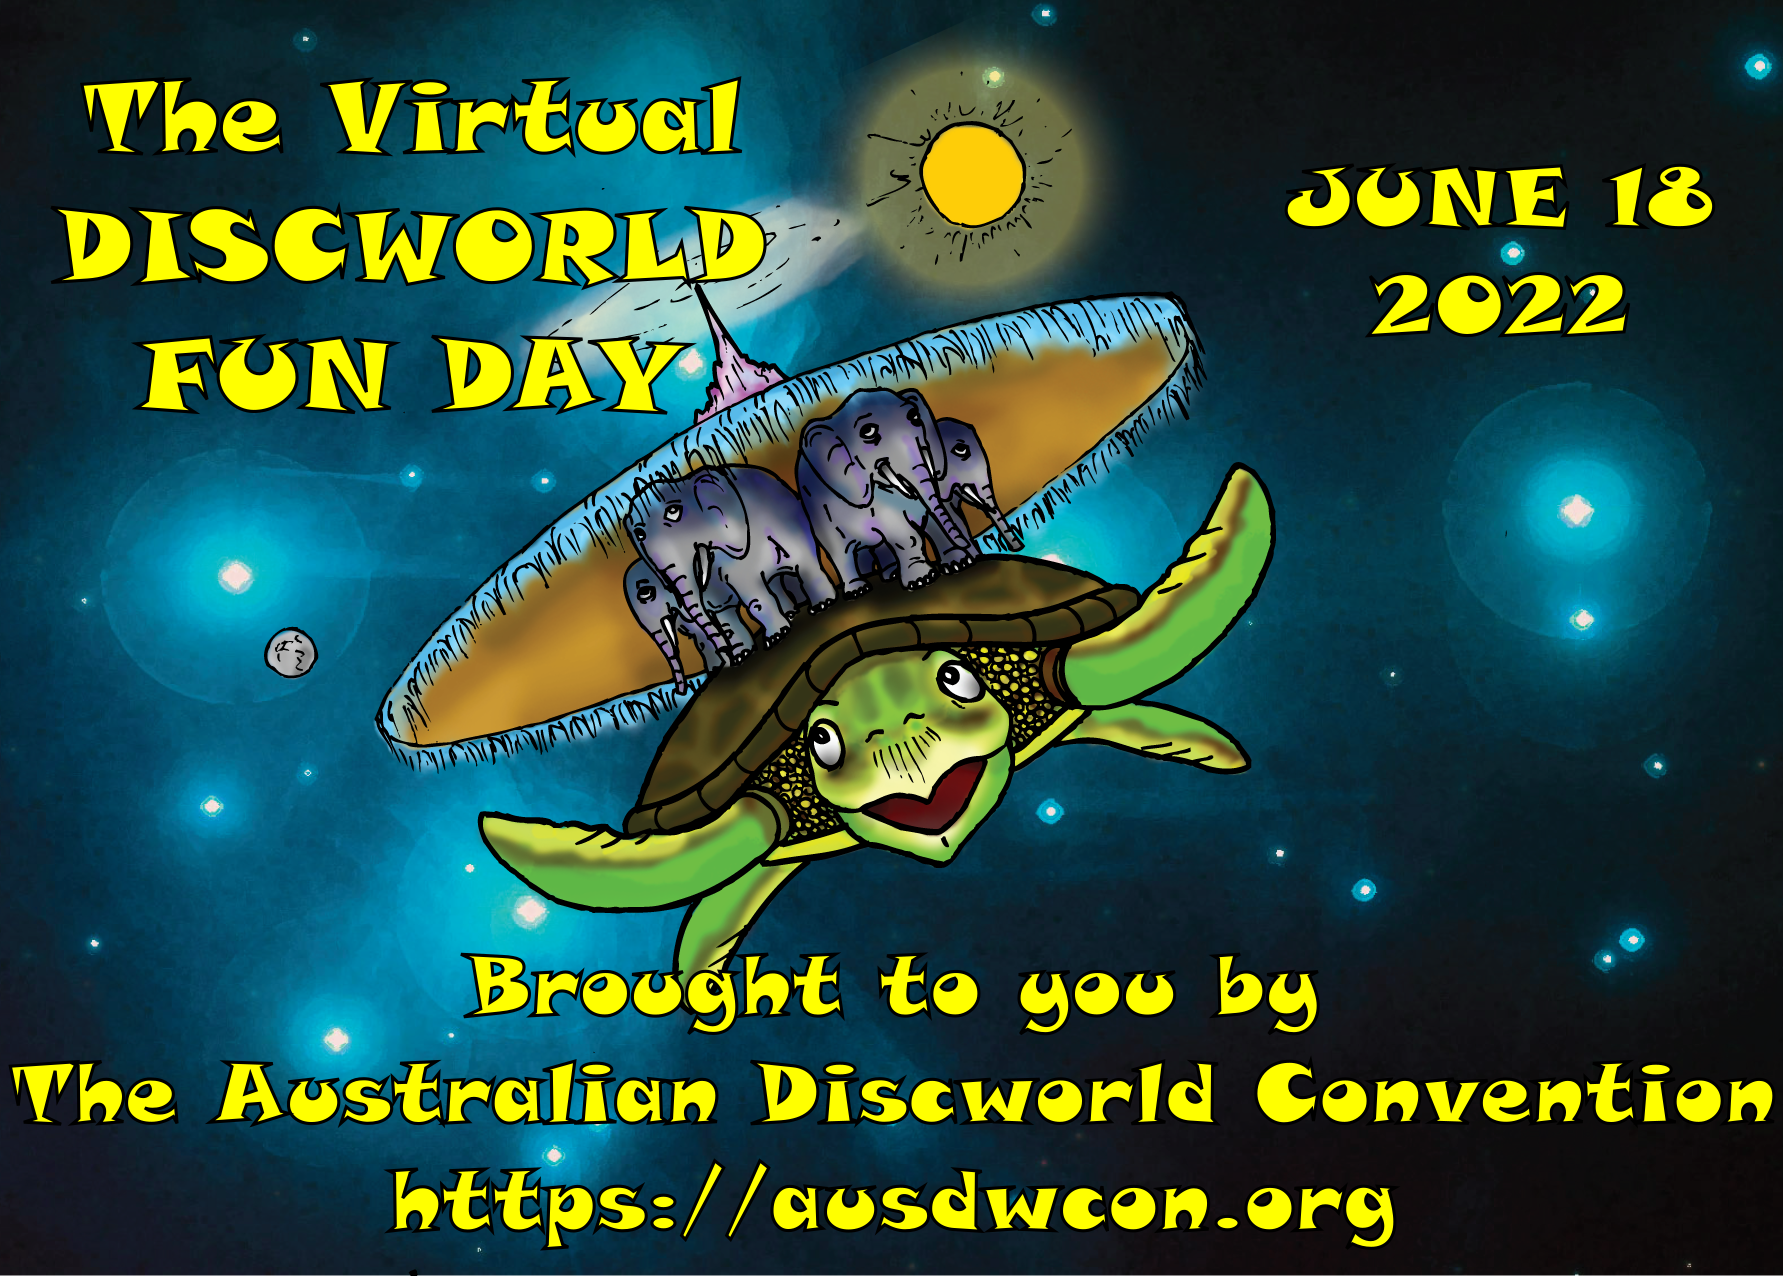 Virtual Discworld Fun Day - June 18 2022